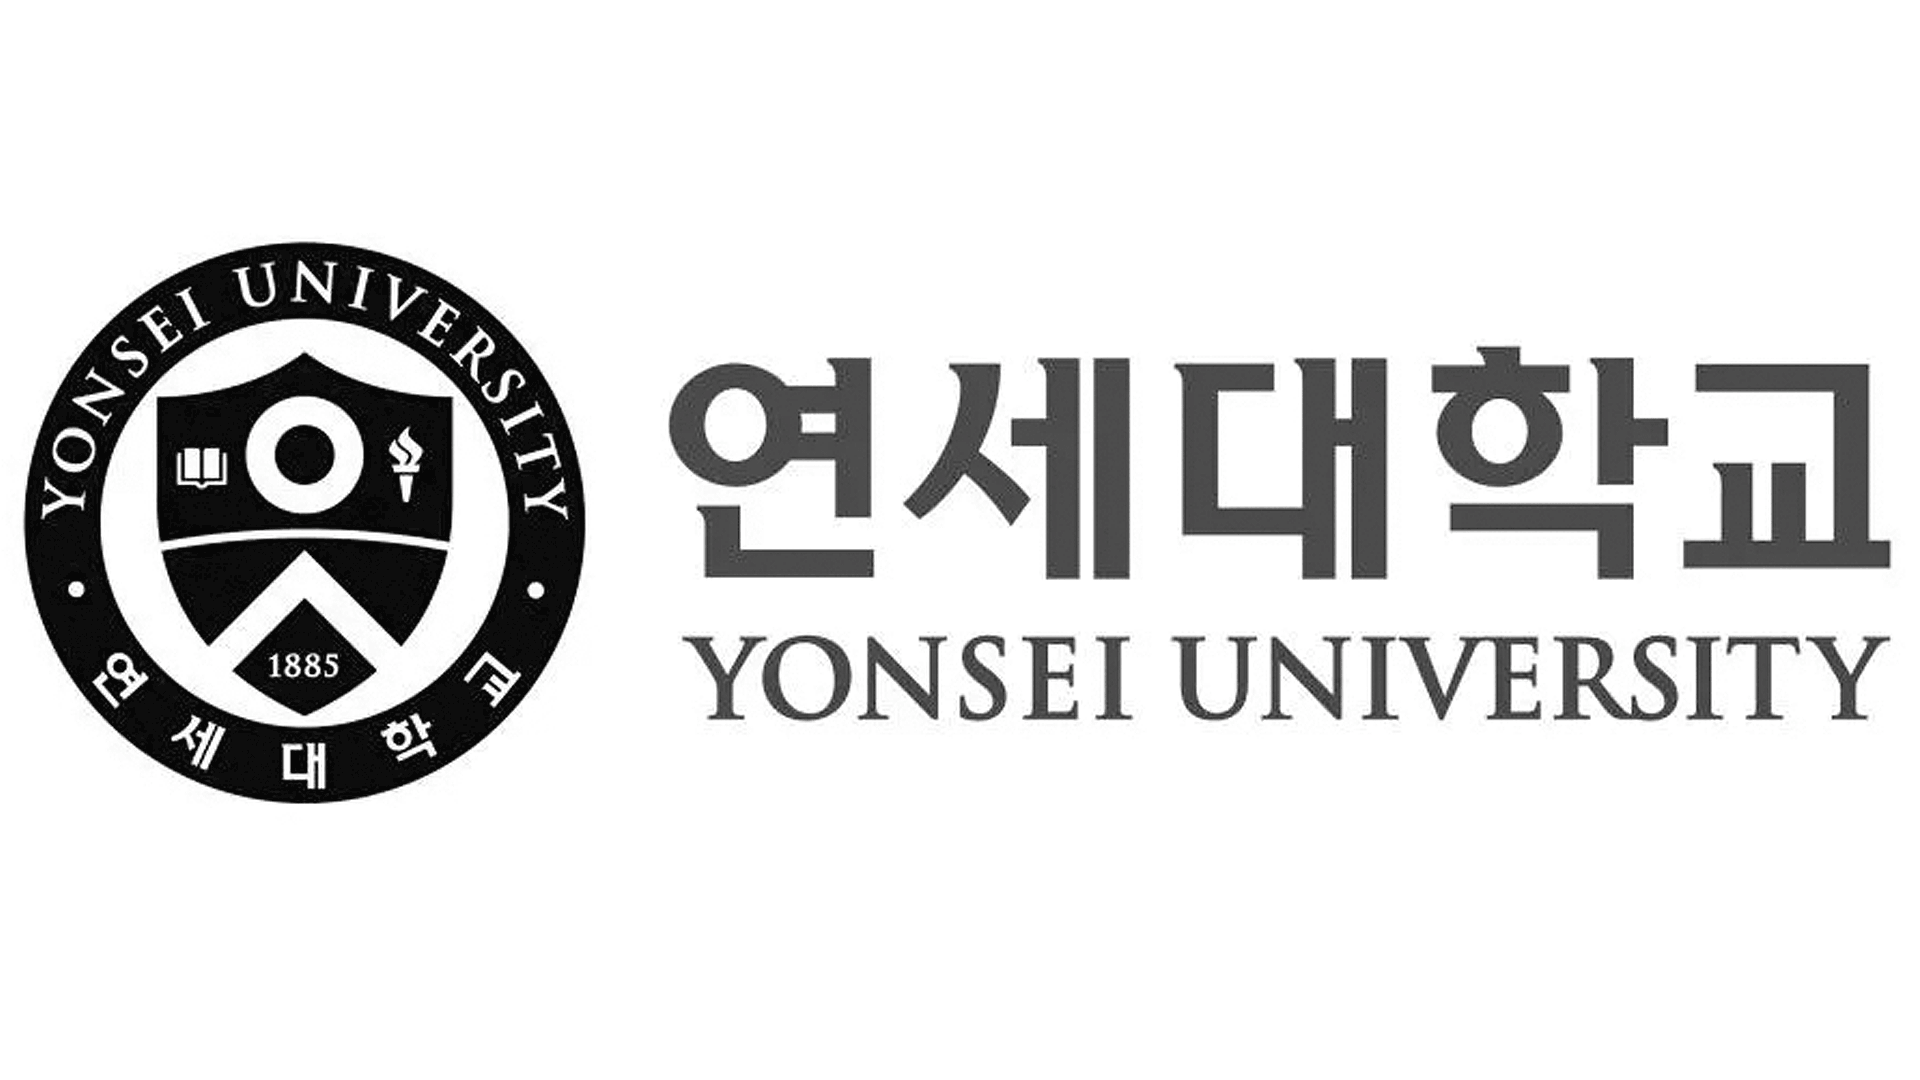 Yonsai University logo